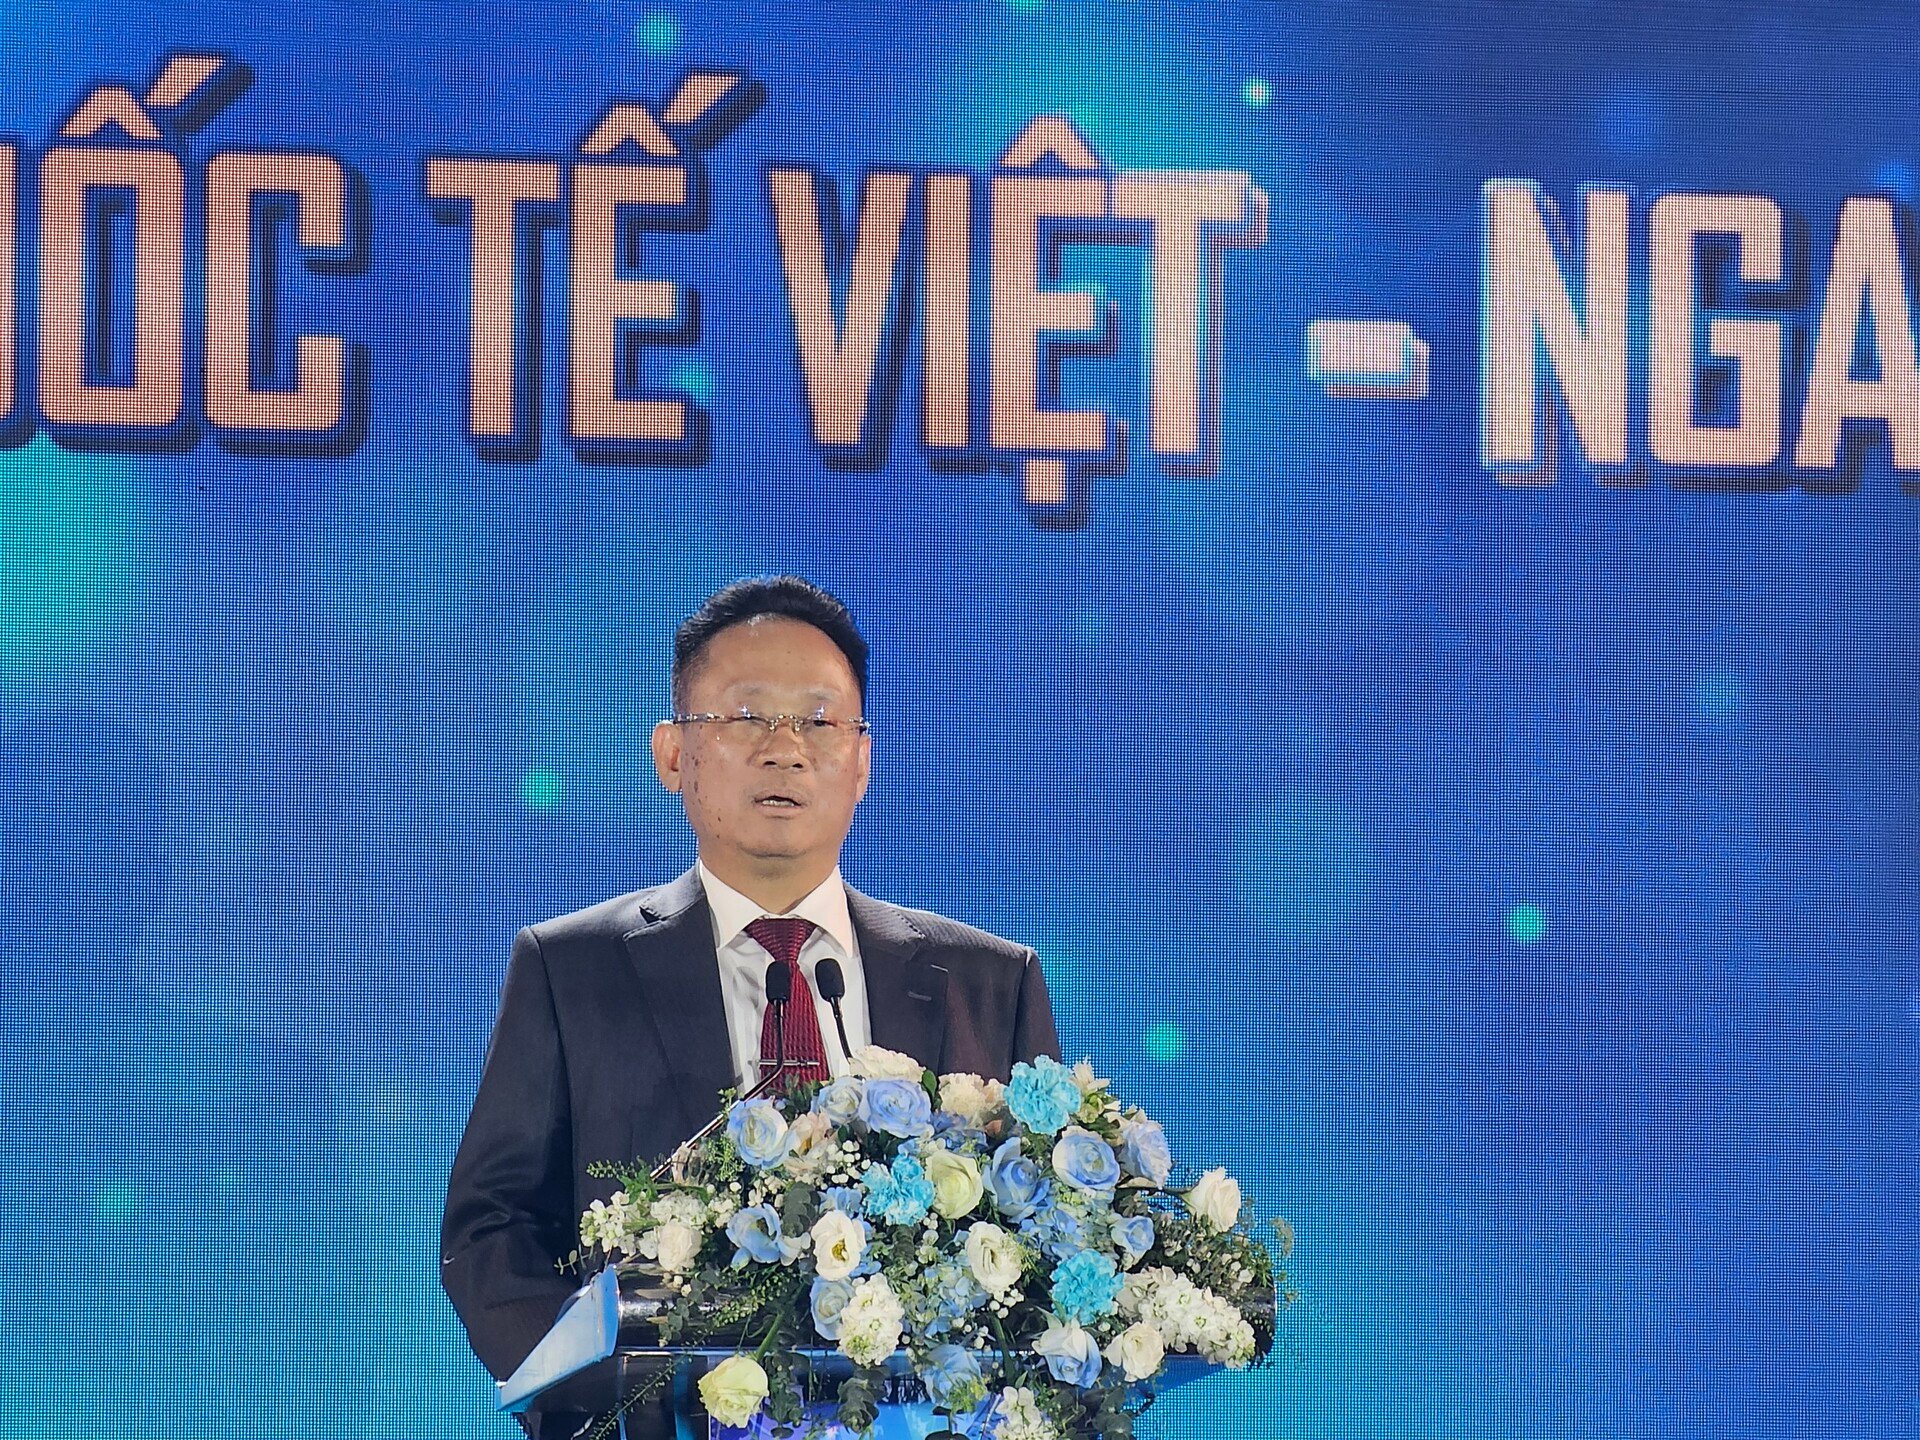 Ông Dương Chí Kiên, Chủ tịch Hội đồng quản trị Tập đoàn Y tế Việt – Nga phát biểu tại buổi lễ